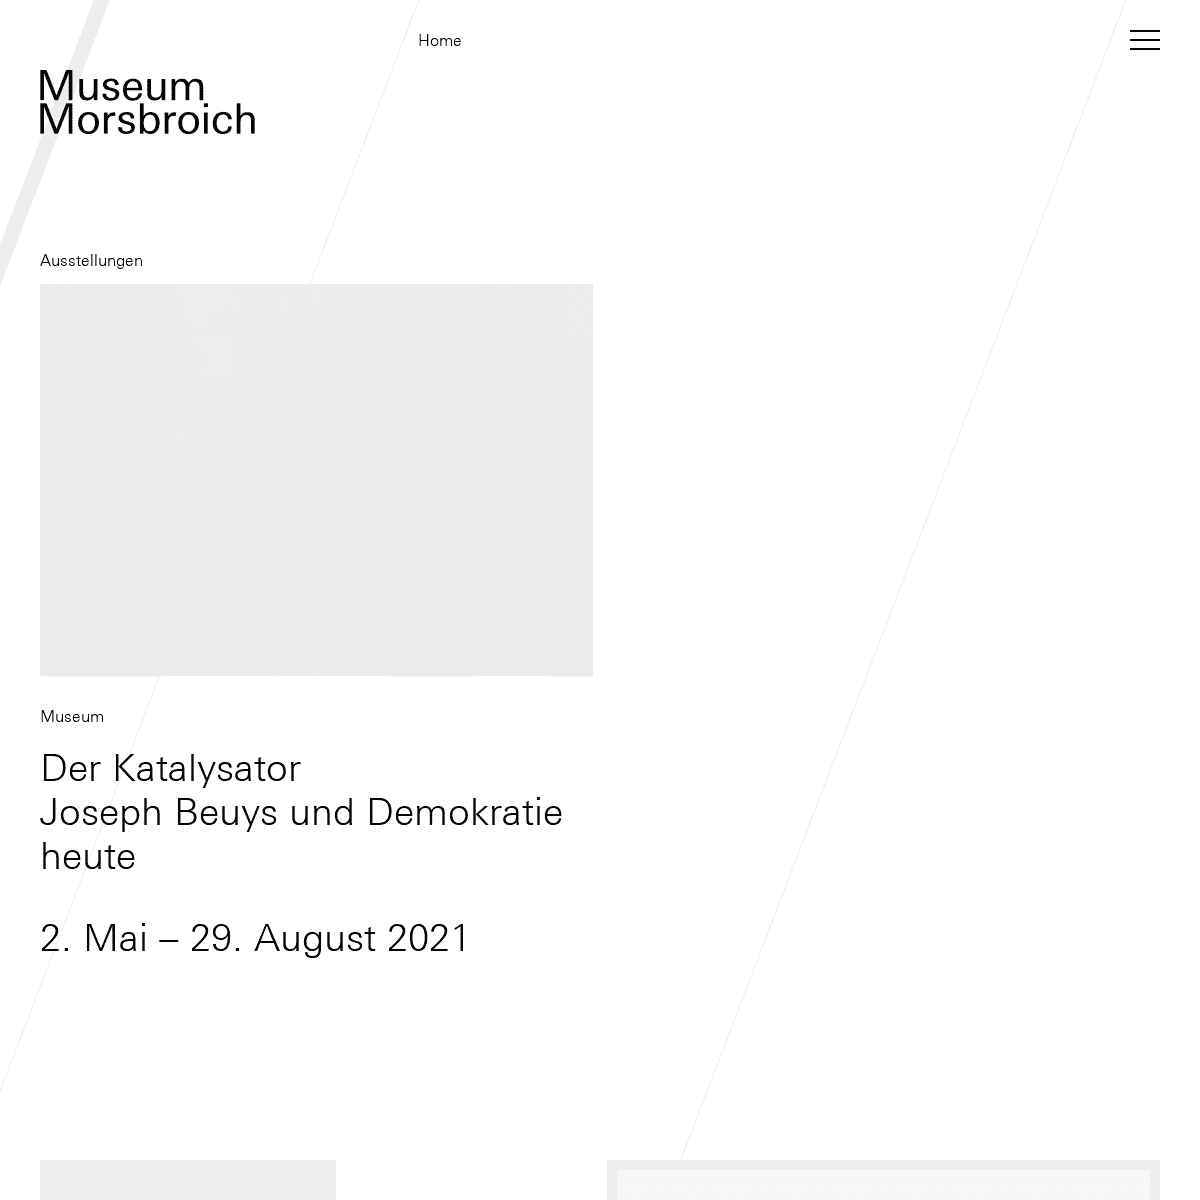 A complete backup of https://museum-morsbroich.de